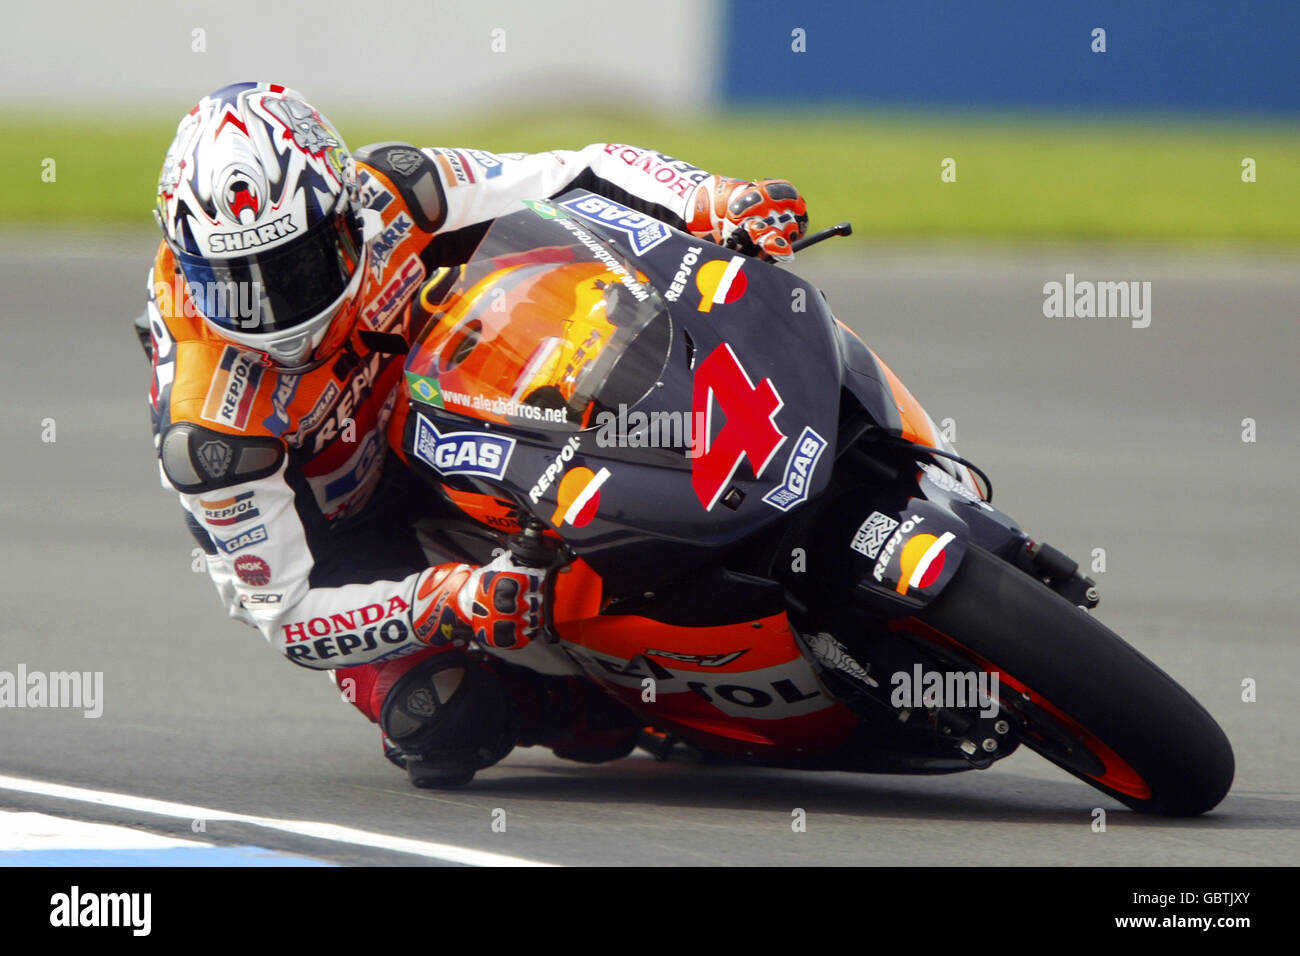 Motorradfahren - großer Preis von Großbritannien - Moto GP - Qualifikation. Alex Barros in Aktion Stockfoto